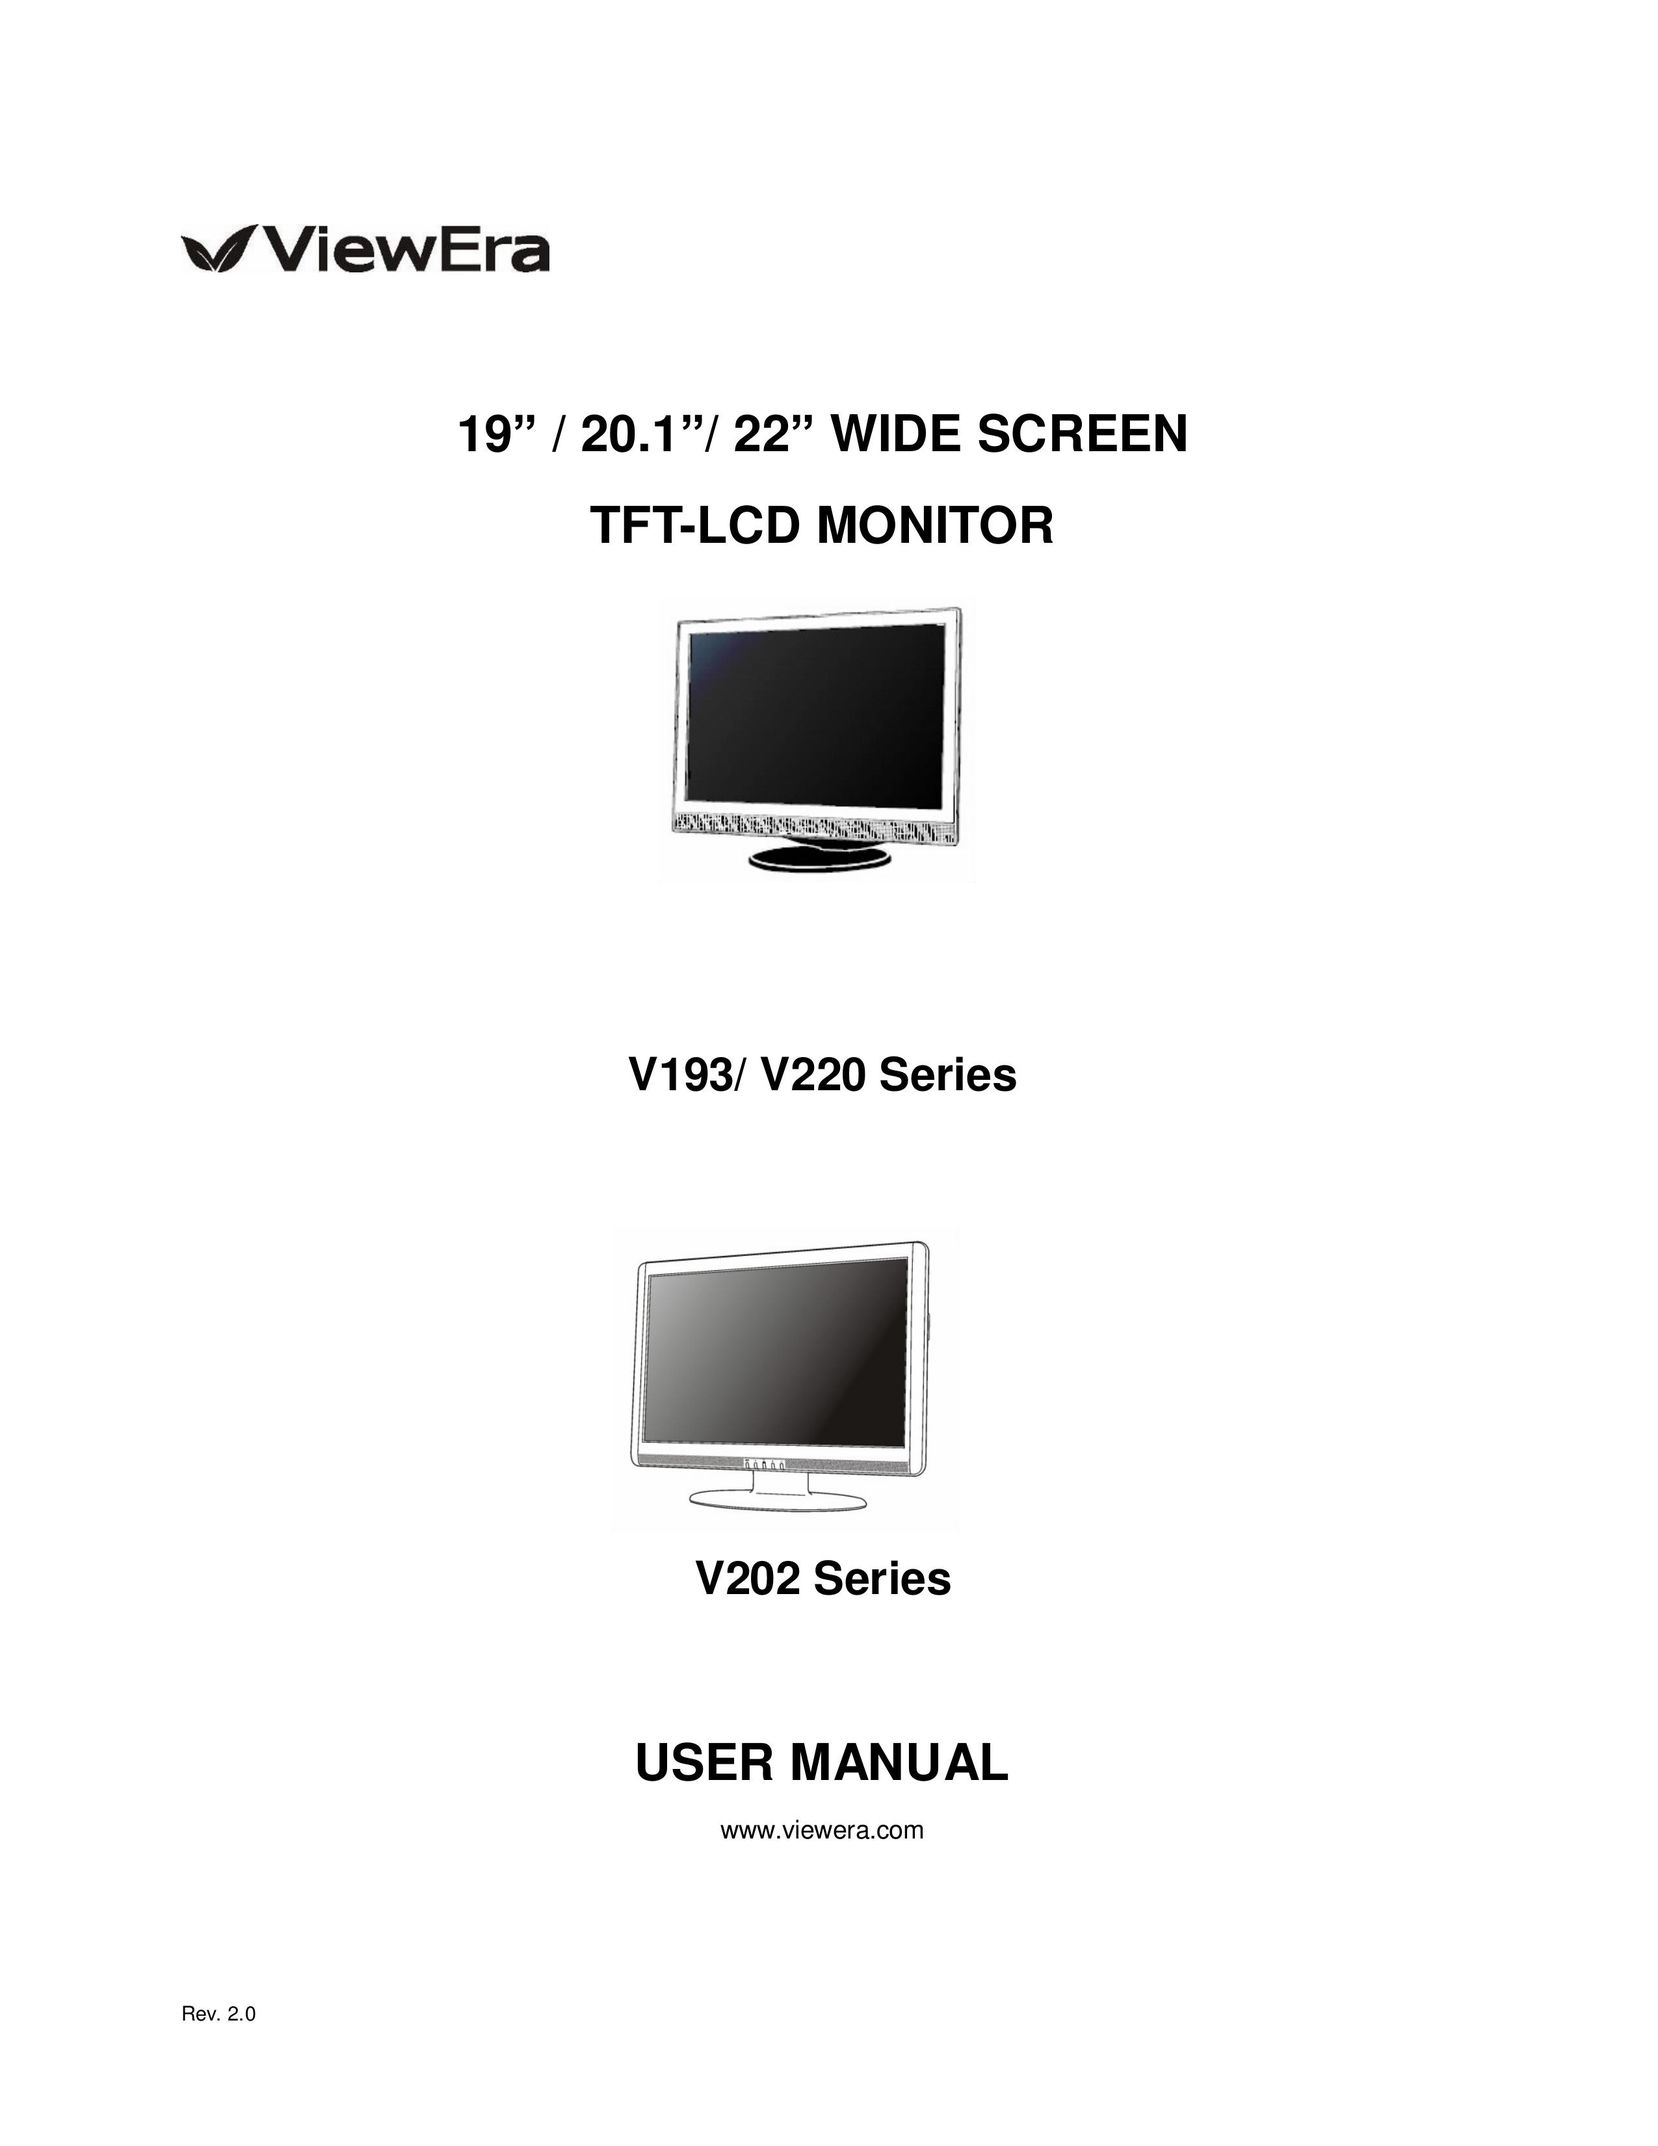 ViewEra V220 Flat Panel Television User Manual